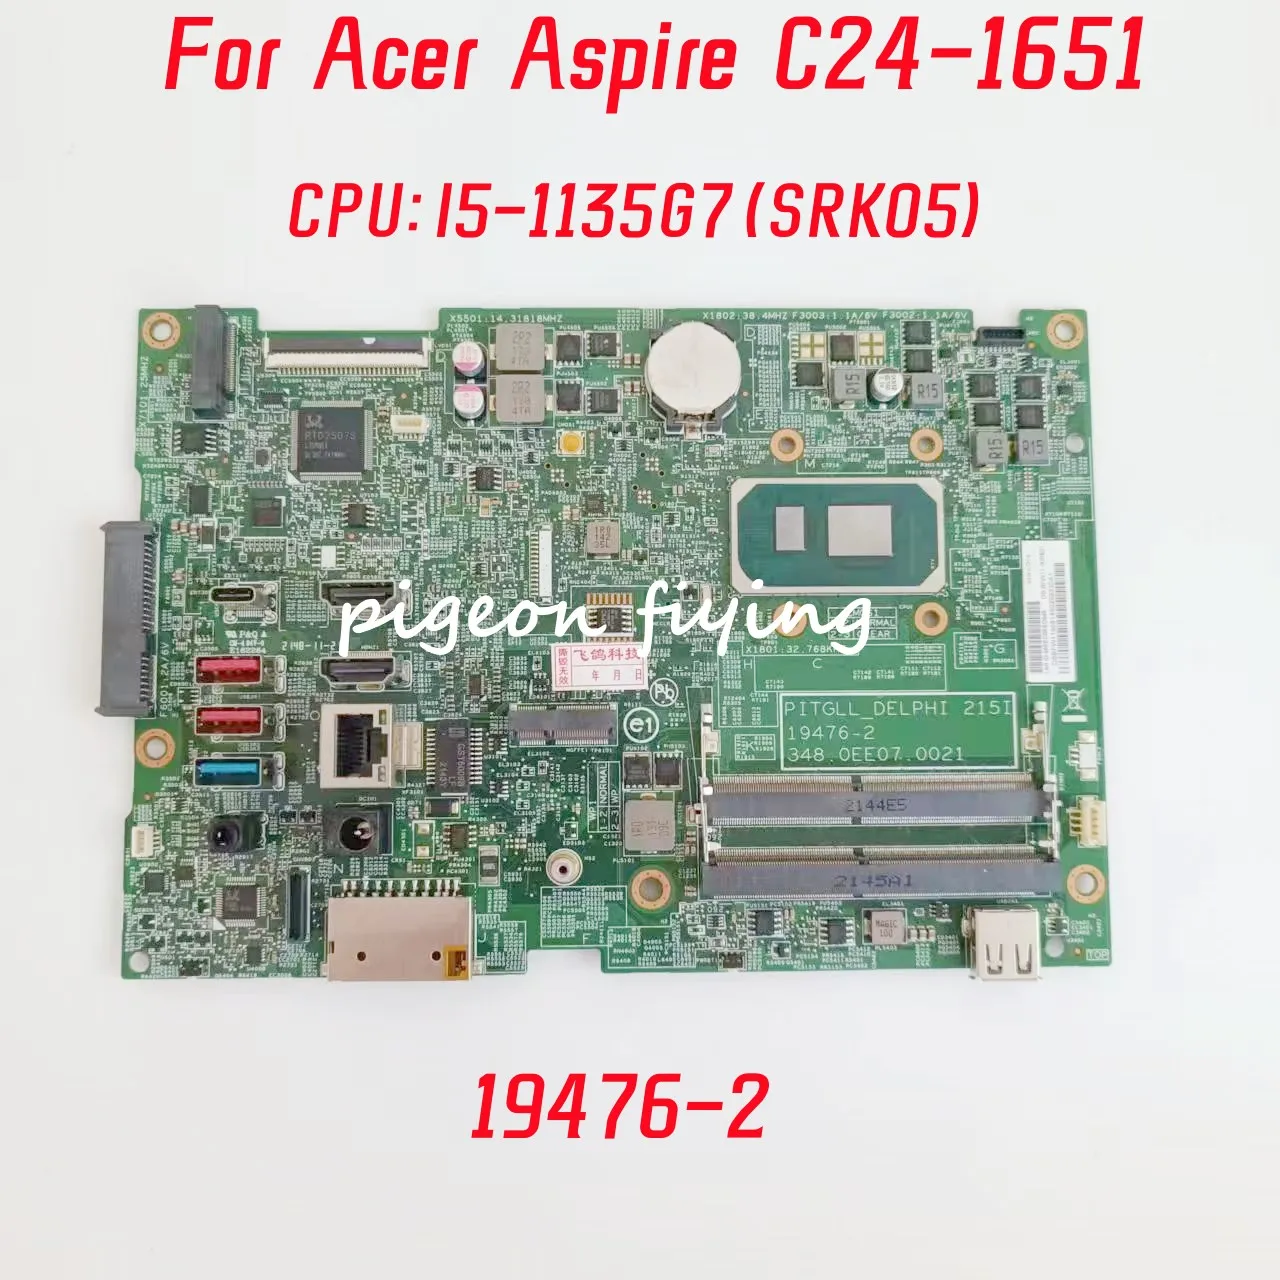 

19476-2 Mainboard For Acer Aspire C24-1651 Laptop Motherboard CPU: I5-1135G7 SRK05 100% Test OK